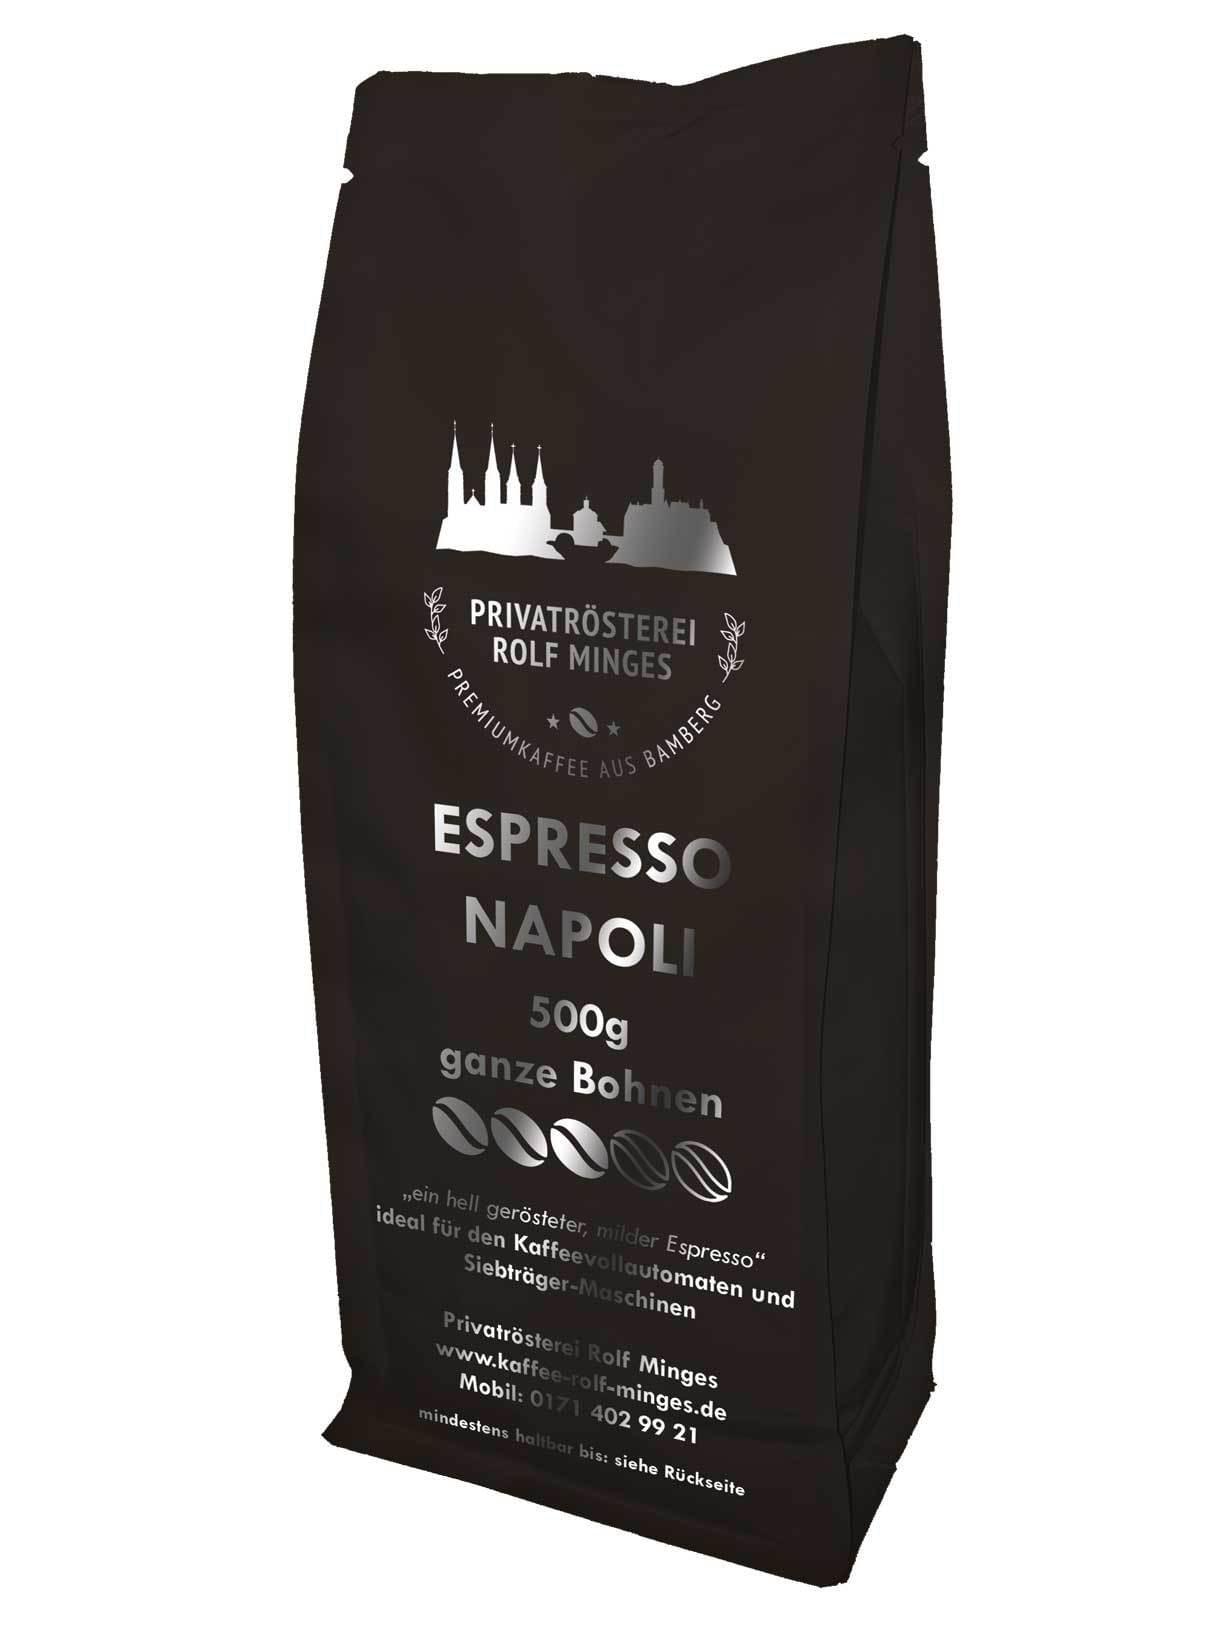 Privatrösterei Rolf Minges Espresso Napoli - 500g